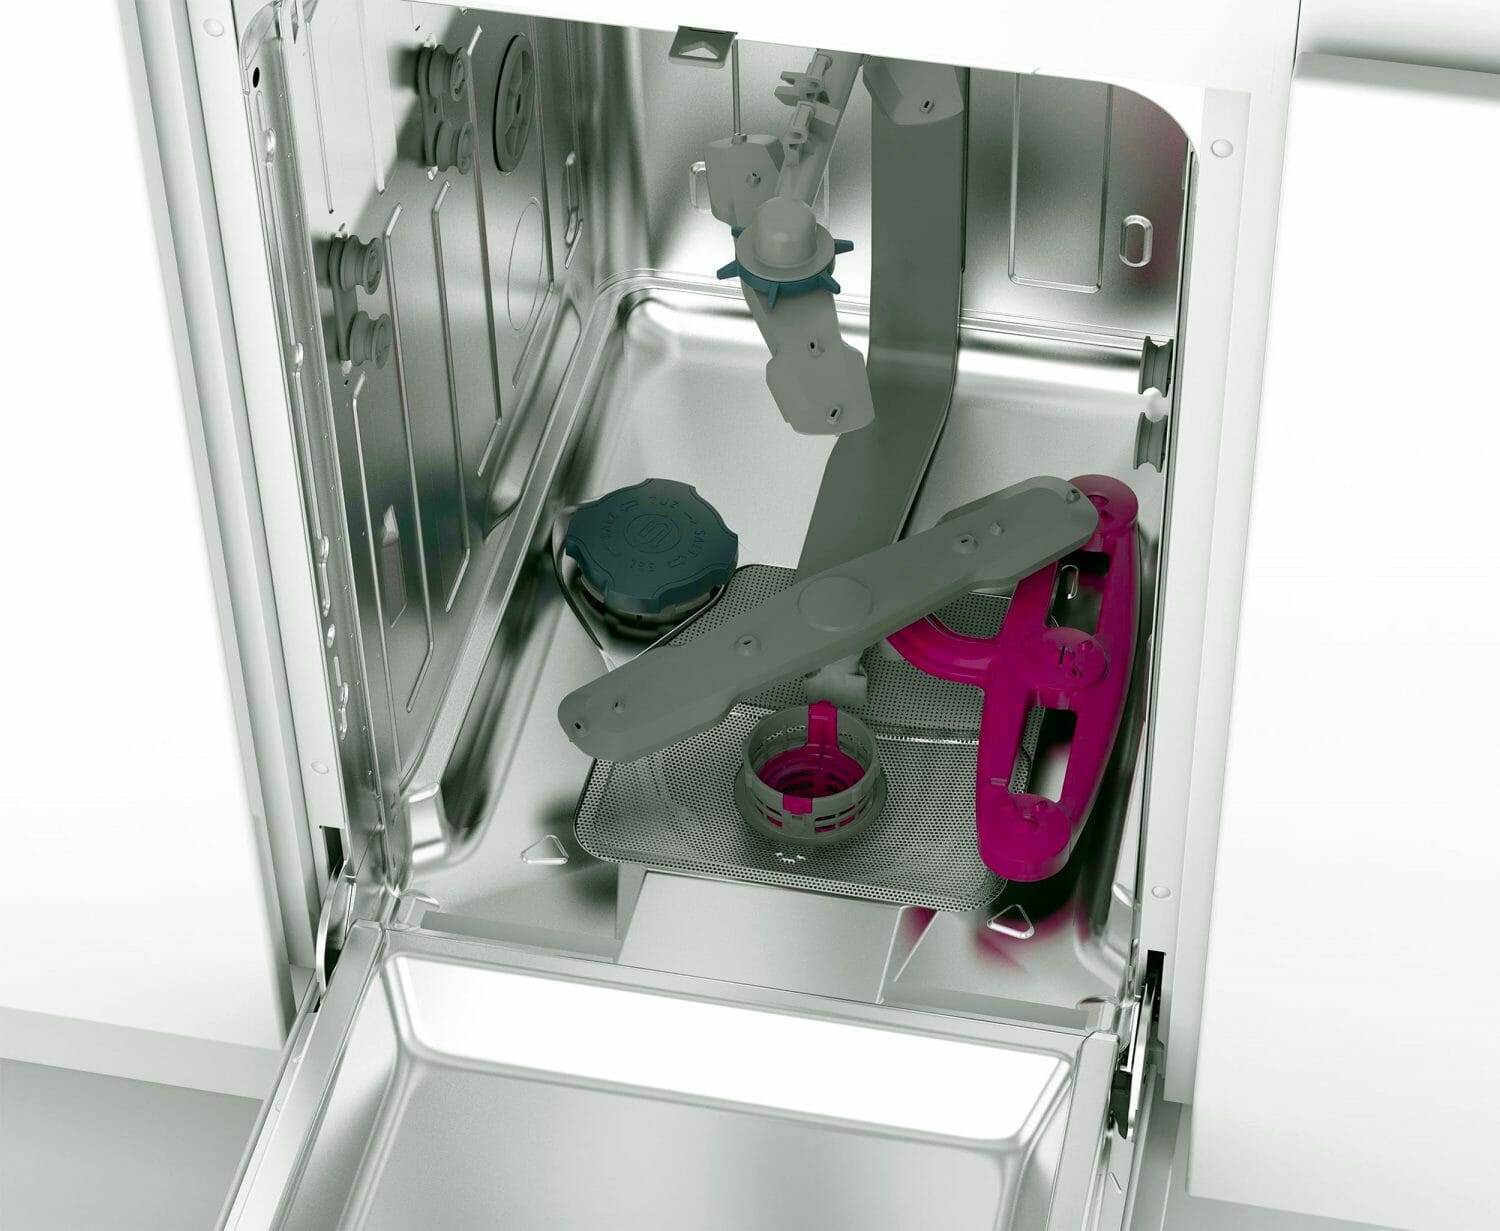 Засорение форсунок коромысла разбрызгивателя посудомоечной машины Bosch